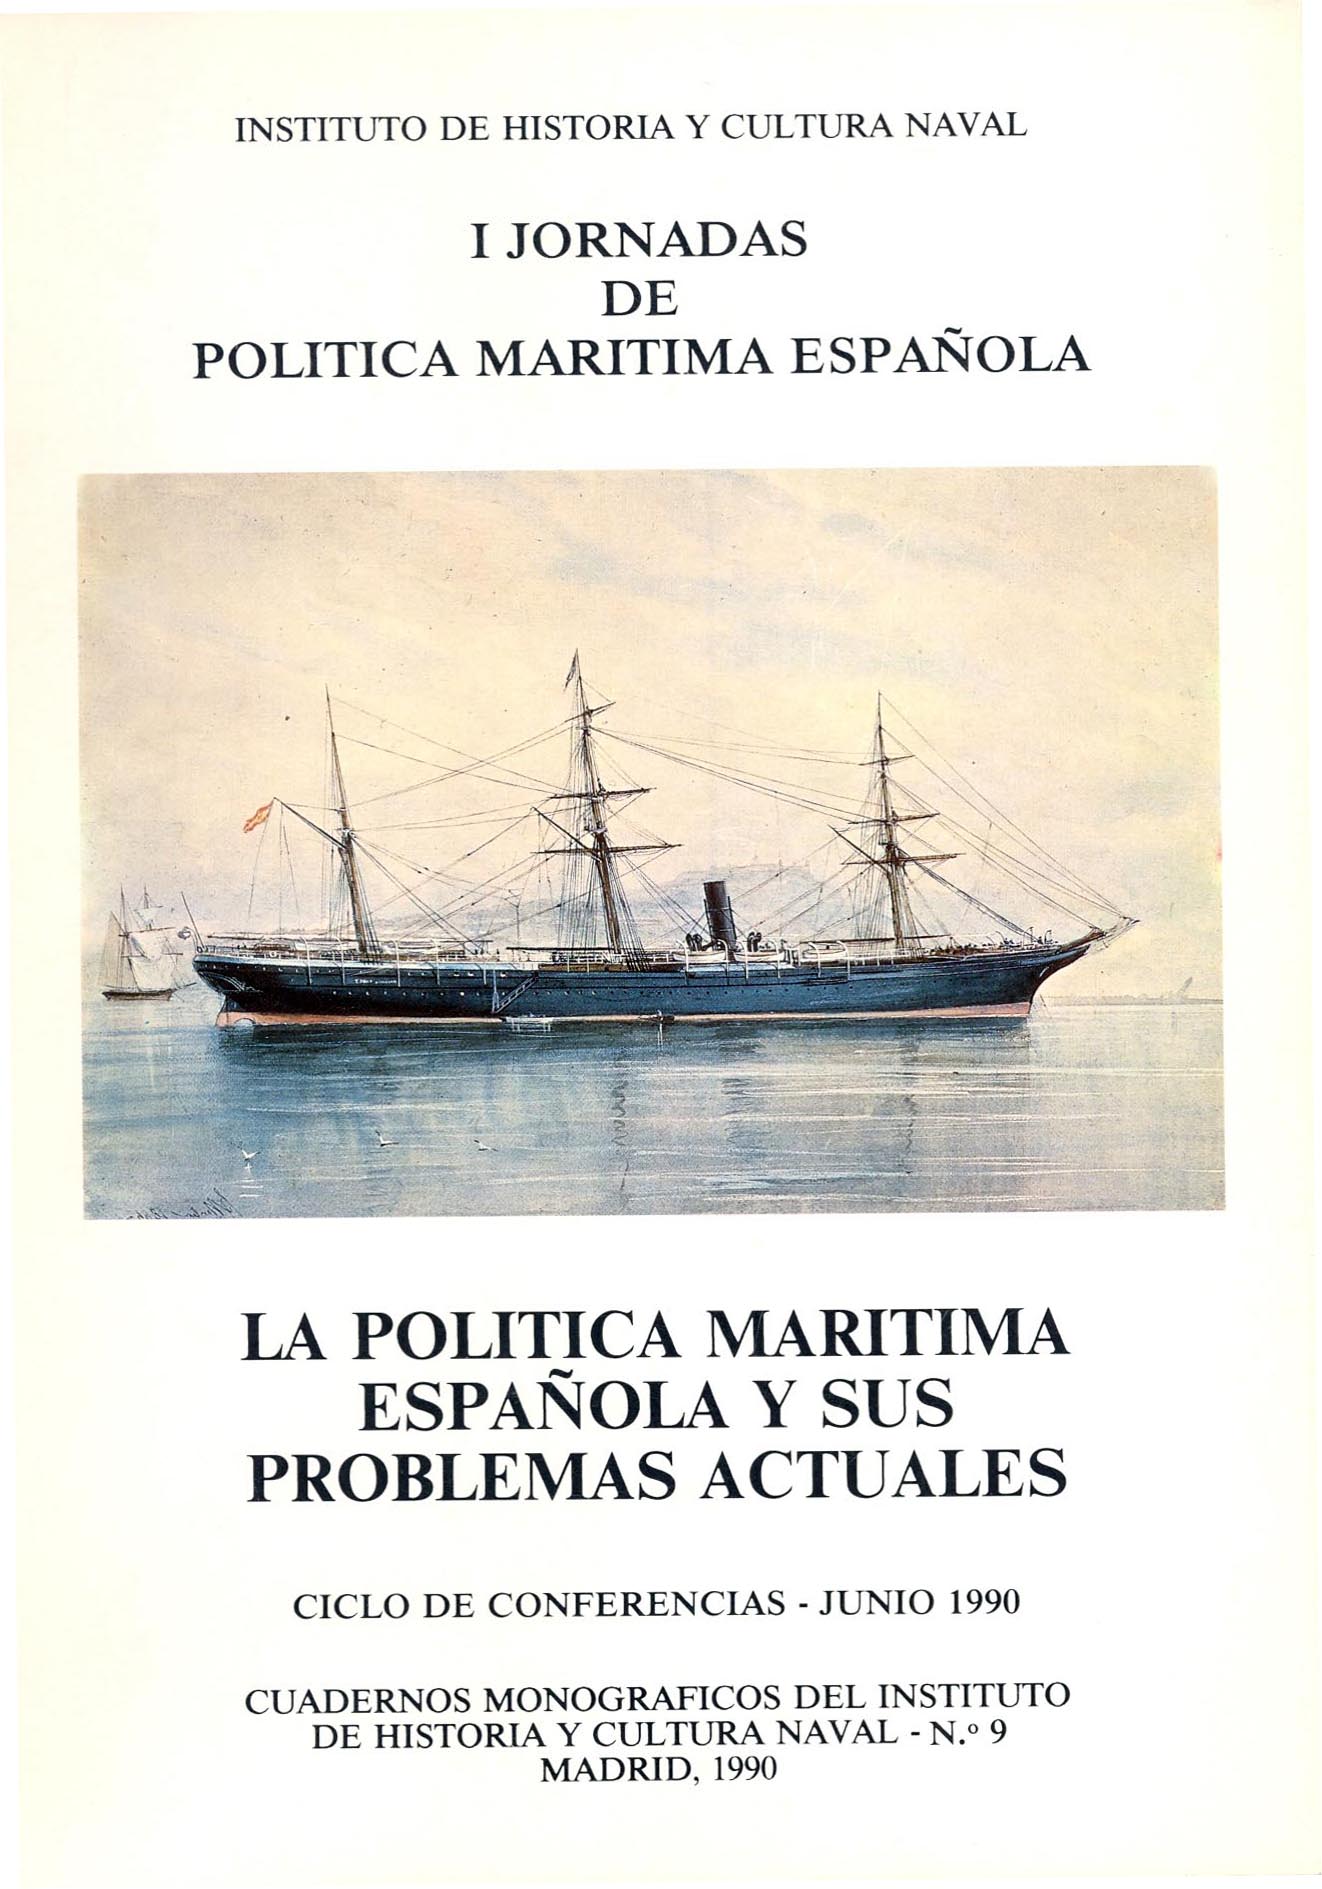 La política marítima española y sus problemas actuales